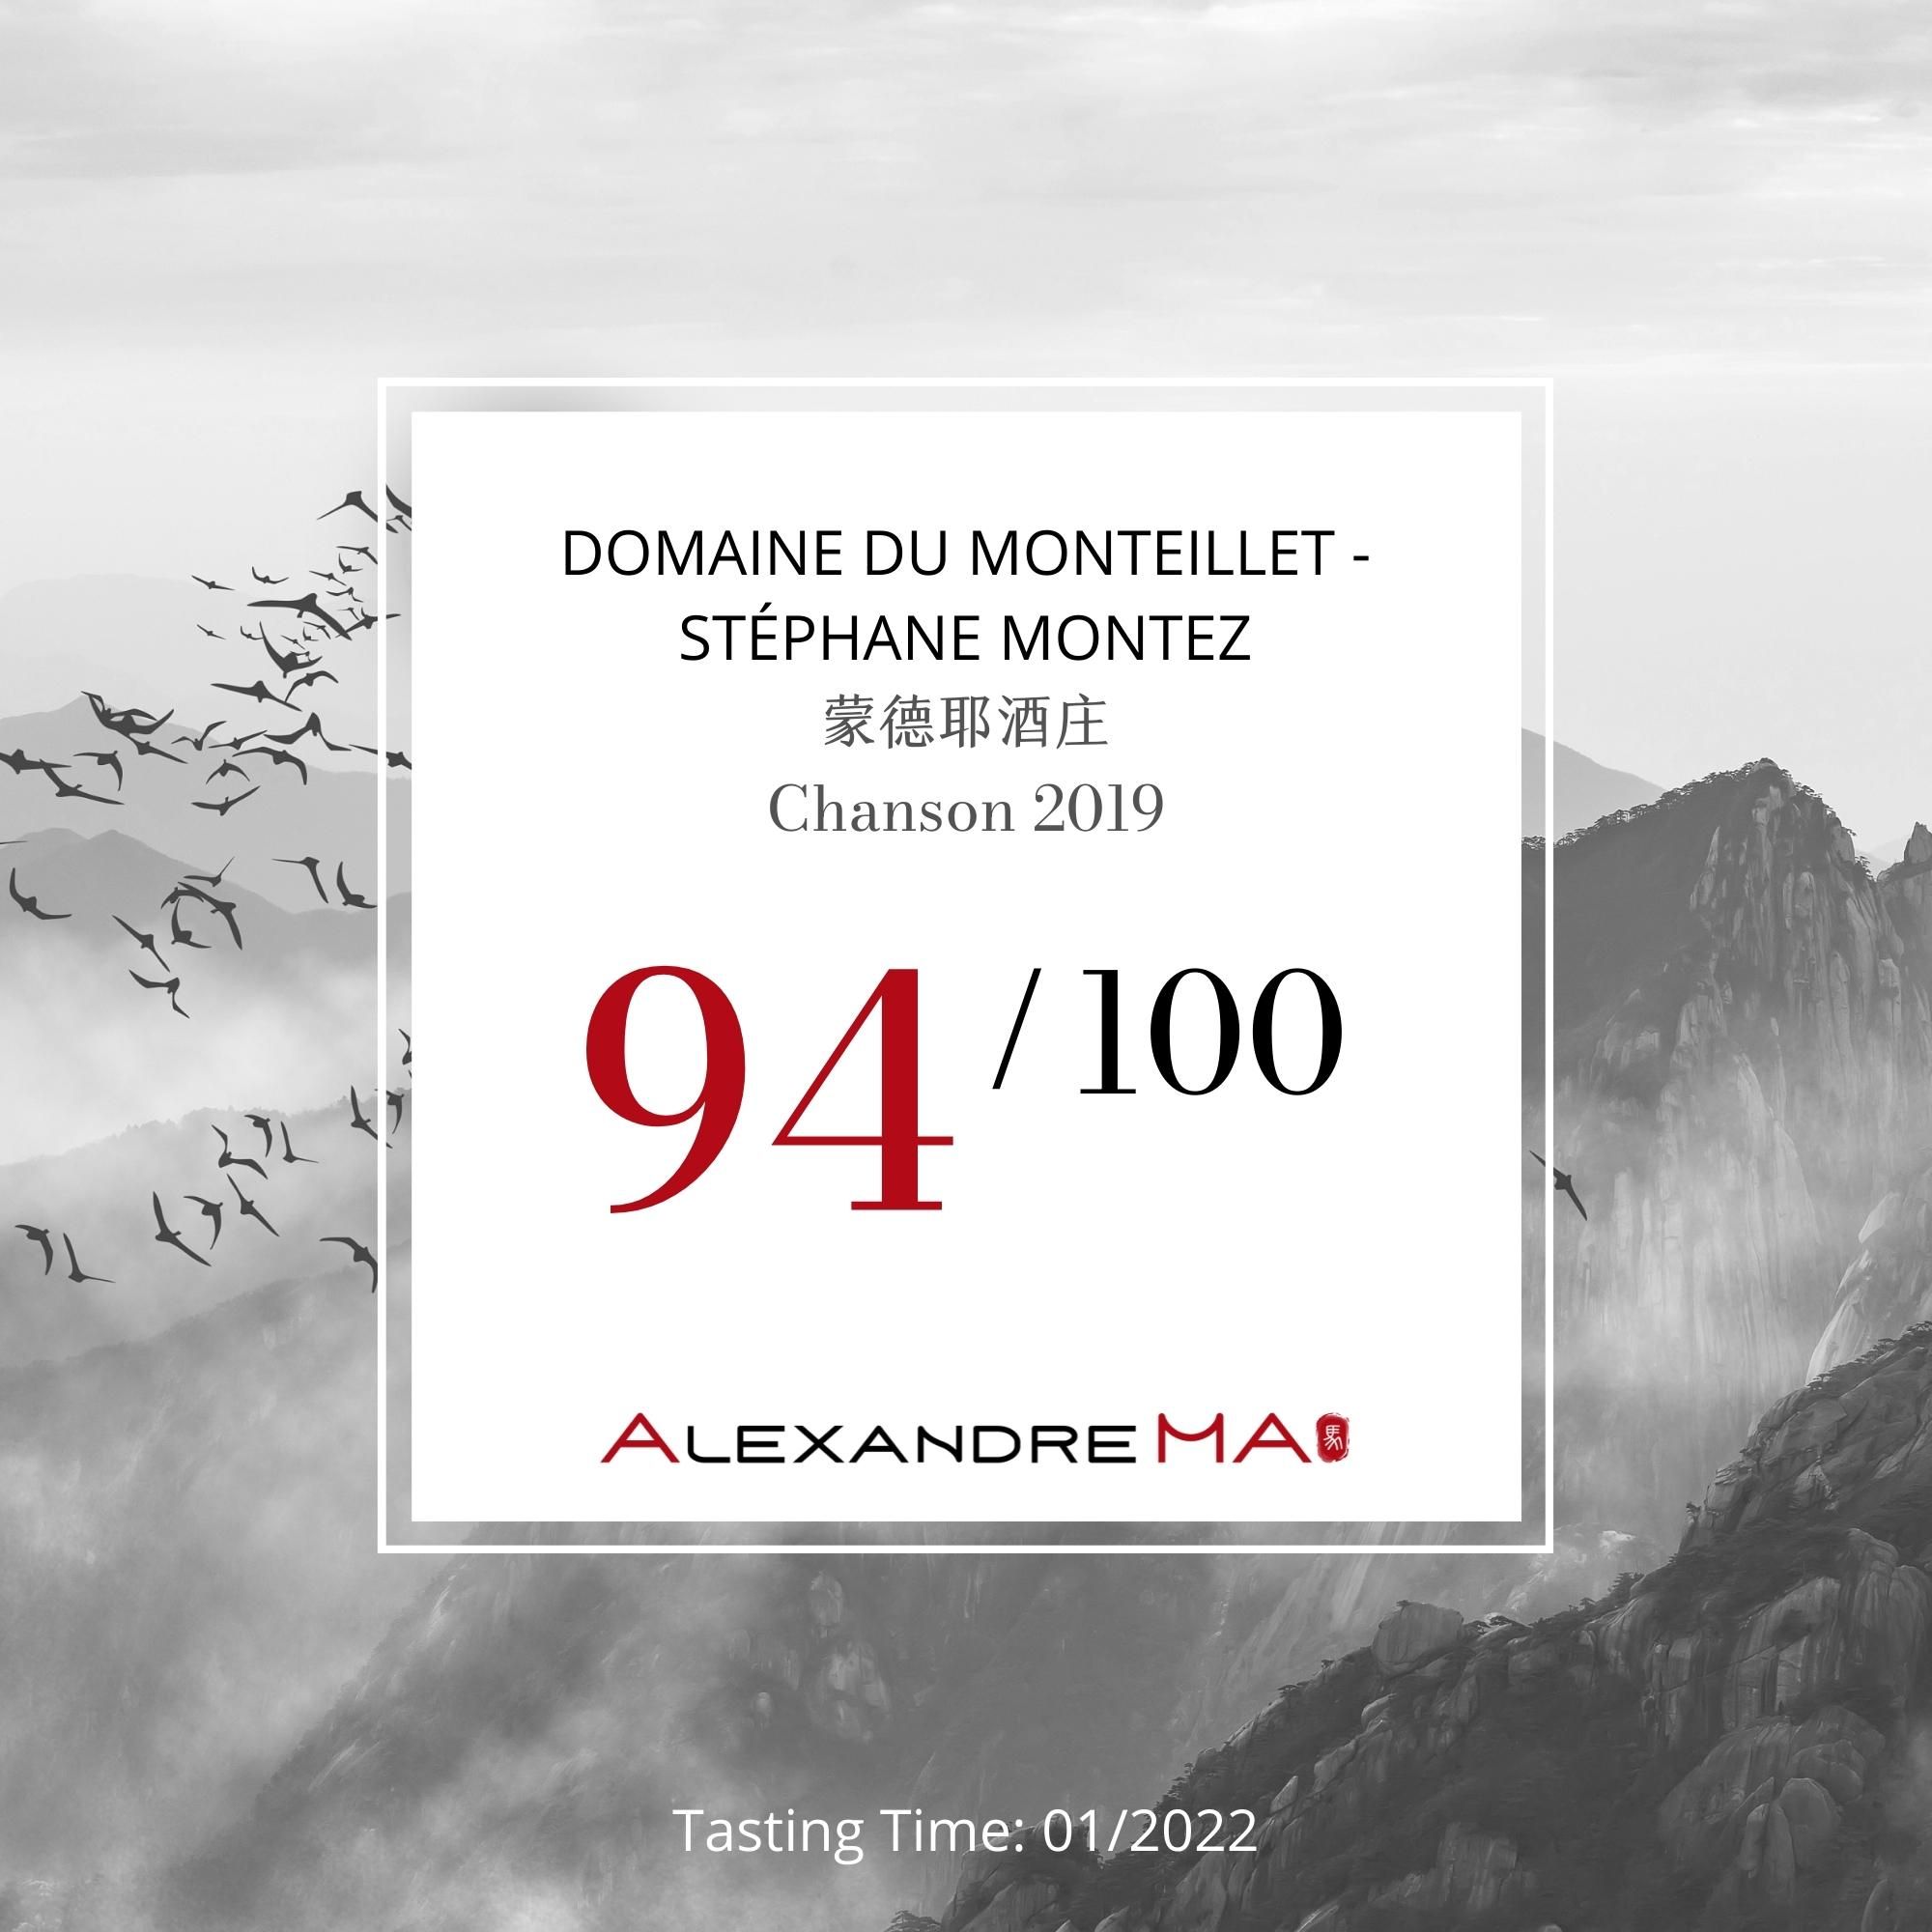 Domaine du Monteillet – Stéphane Montez蒙德耶酒庄-Chanson 2019 - Alexandre Ma